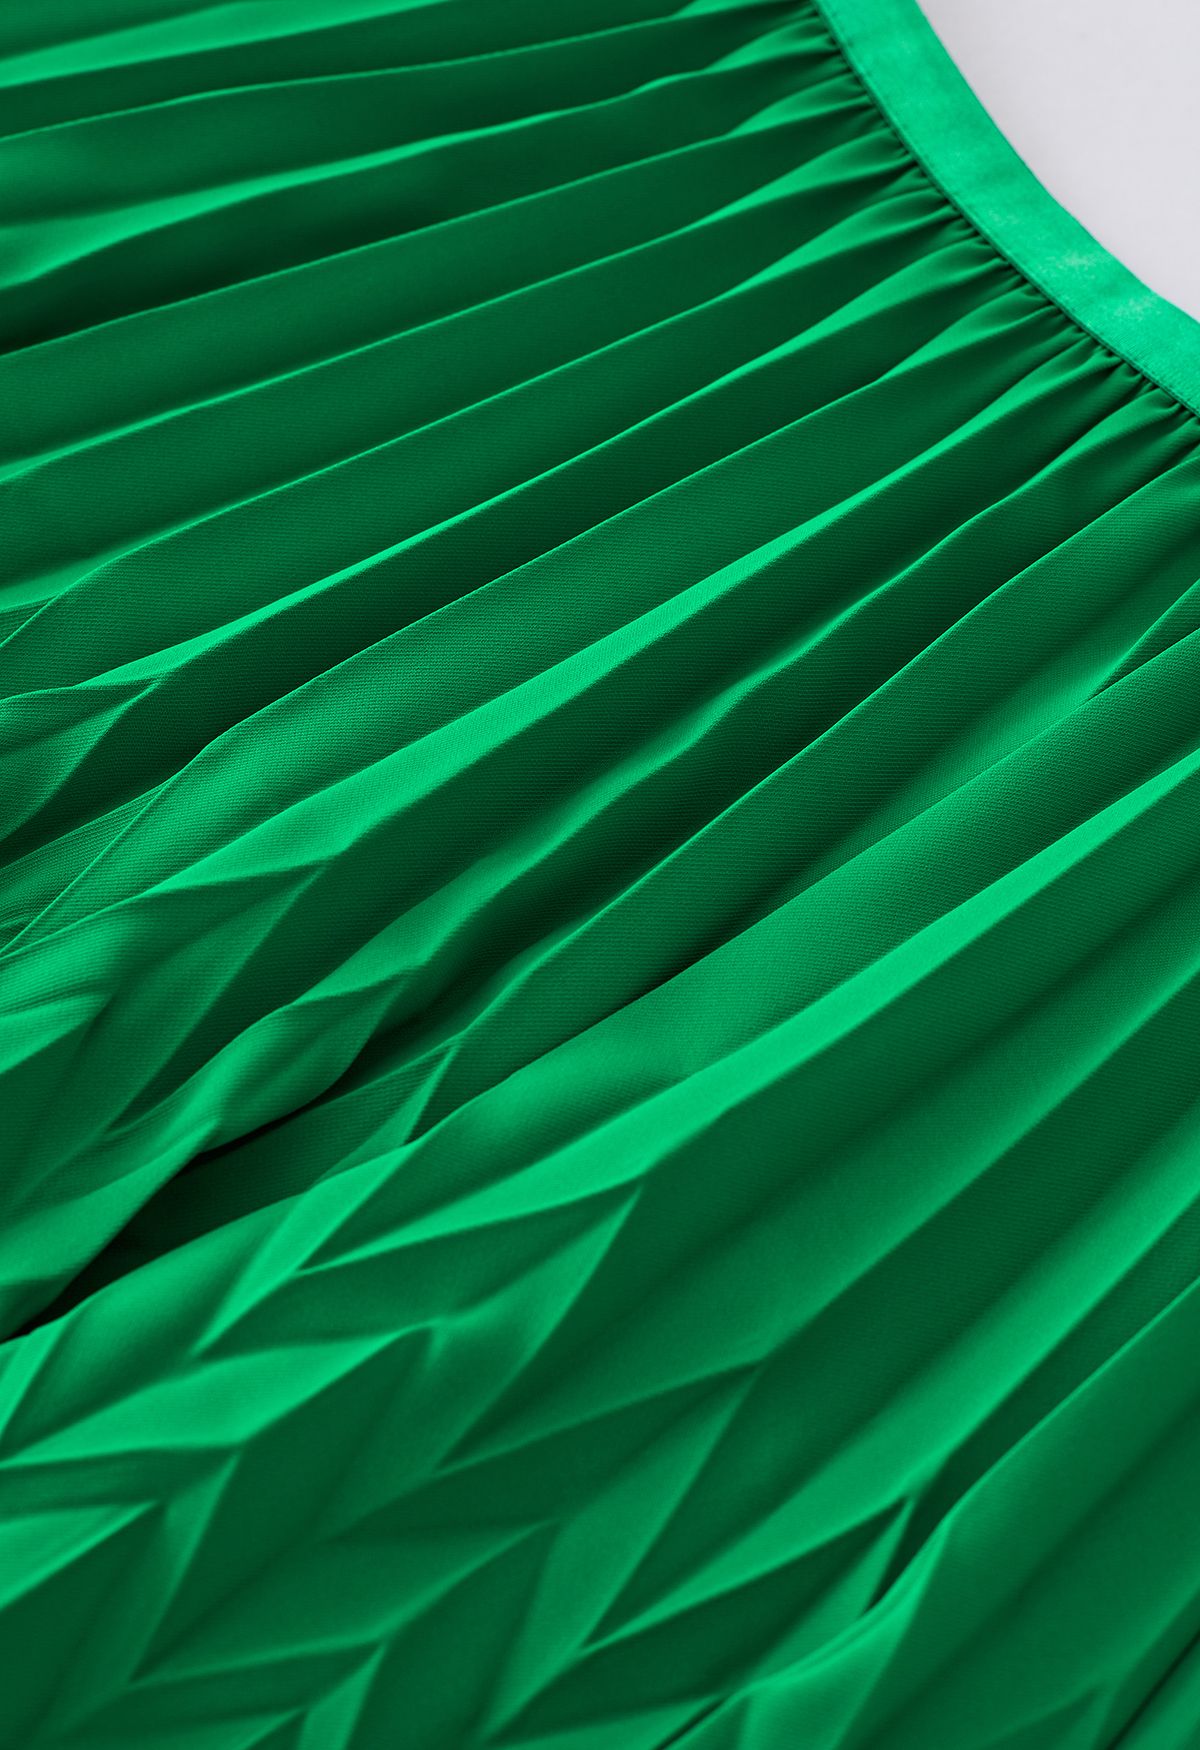 Falda midi plisada con relieve en zigzag en verde